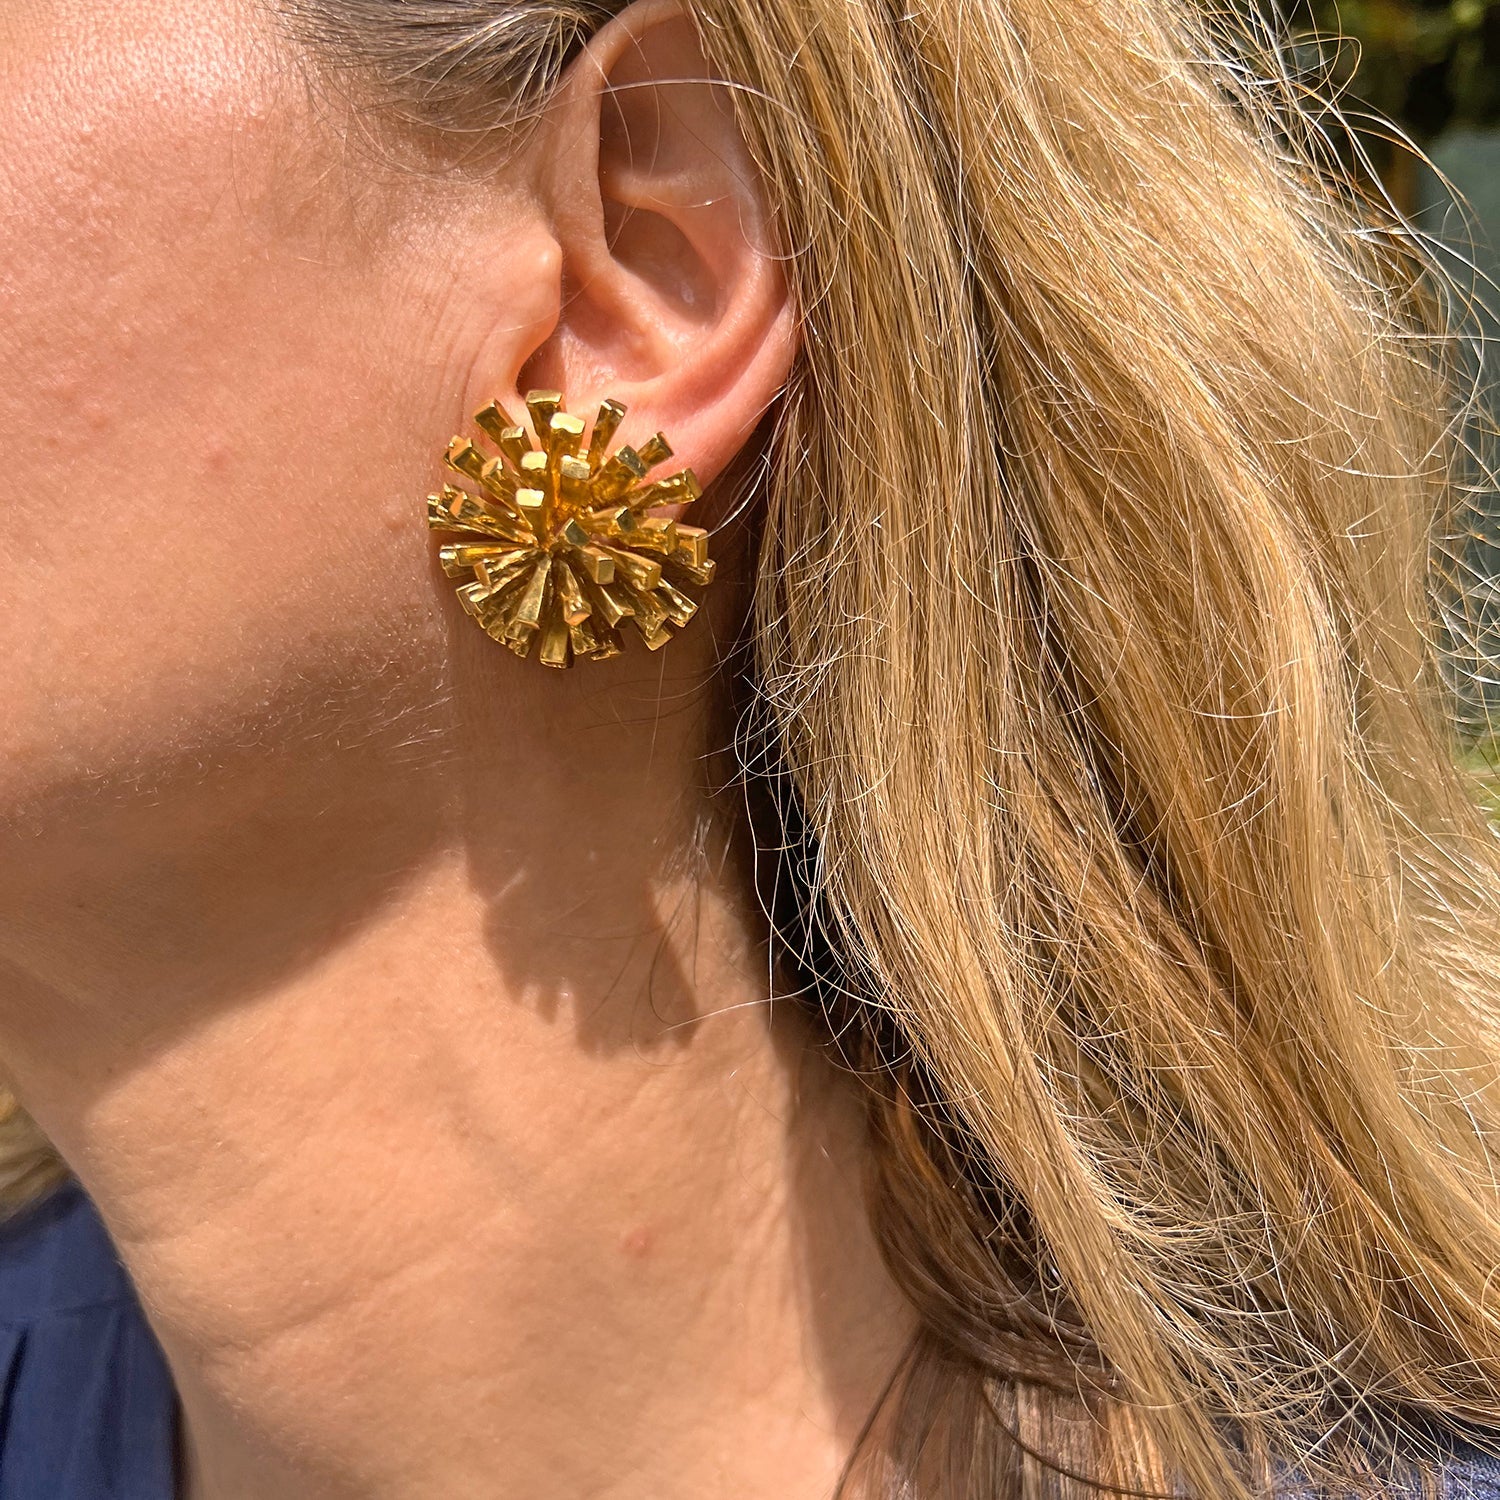 Golden Sunburst Earring